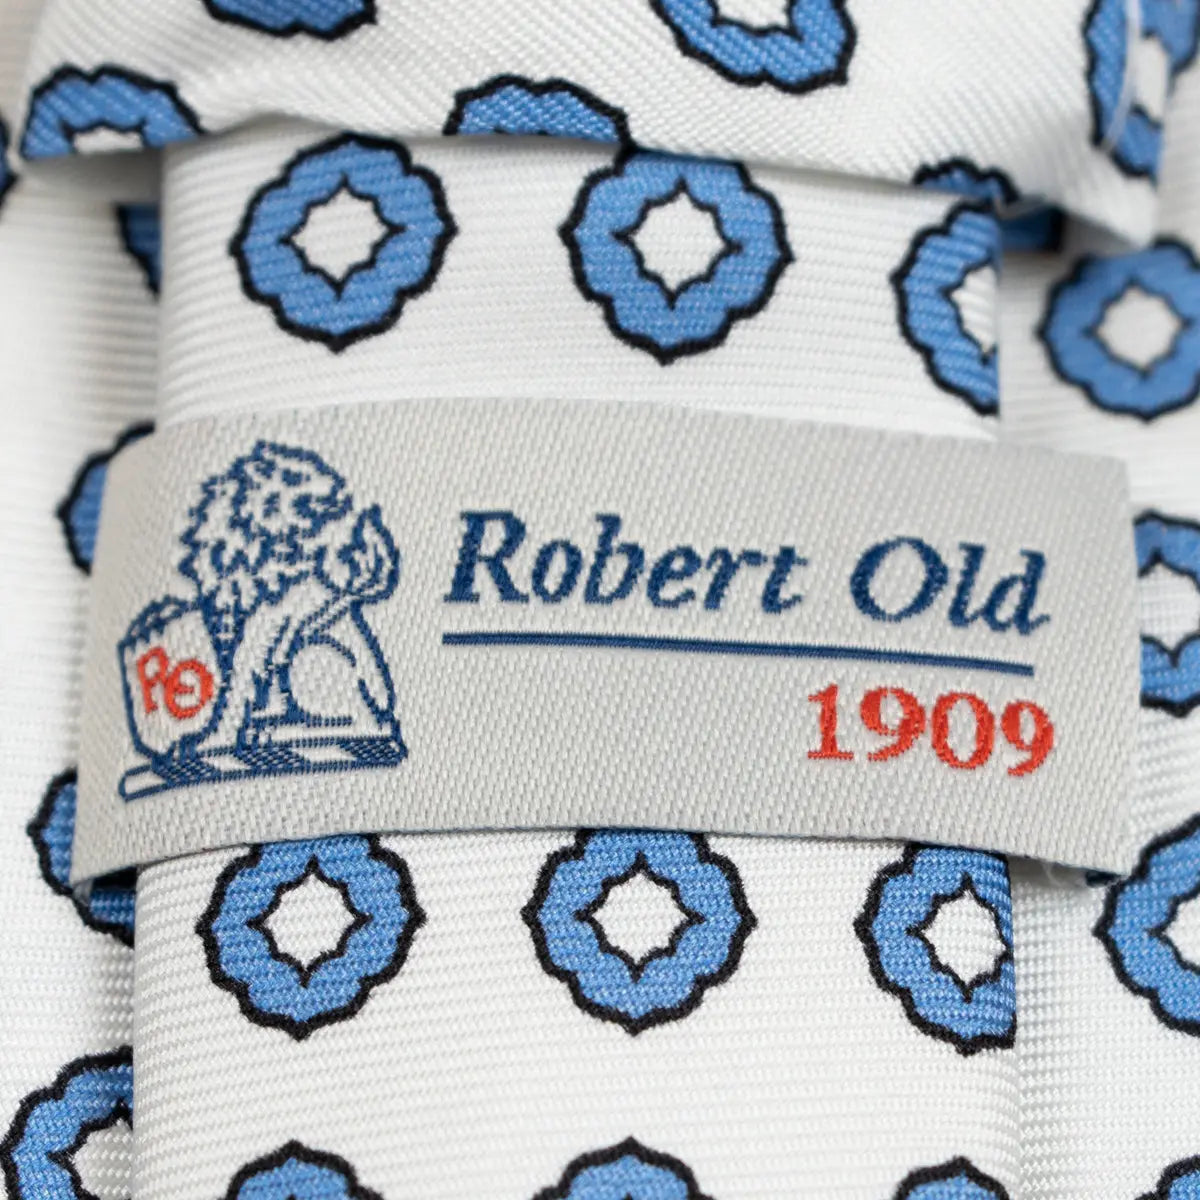 White & Blue Motif 100% Silk Tie  Robert Old   